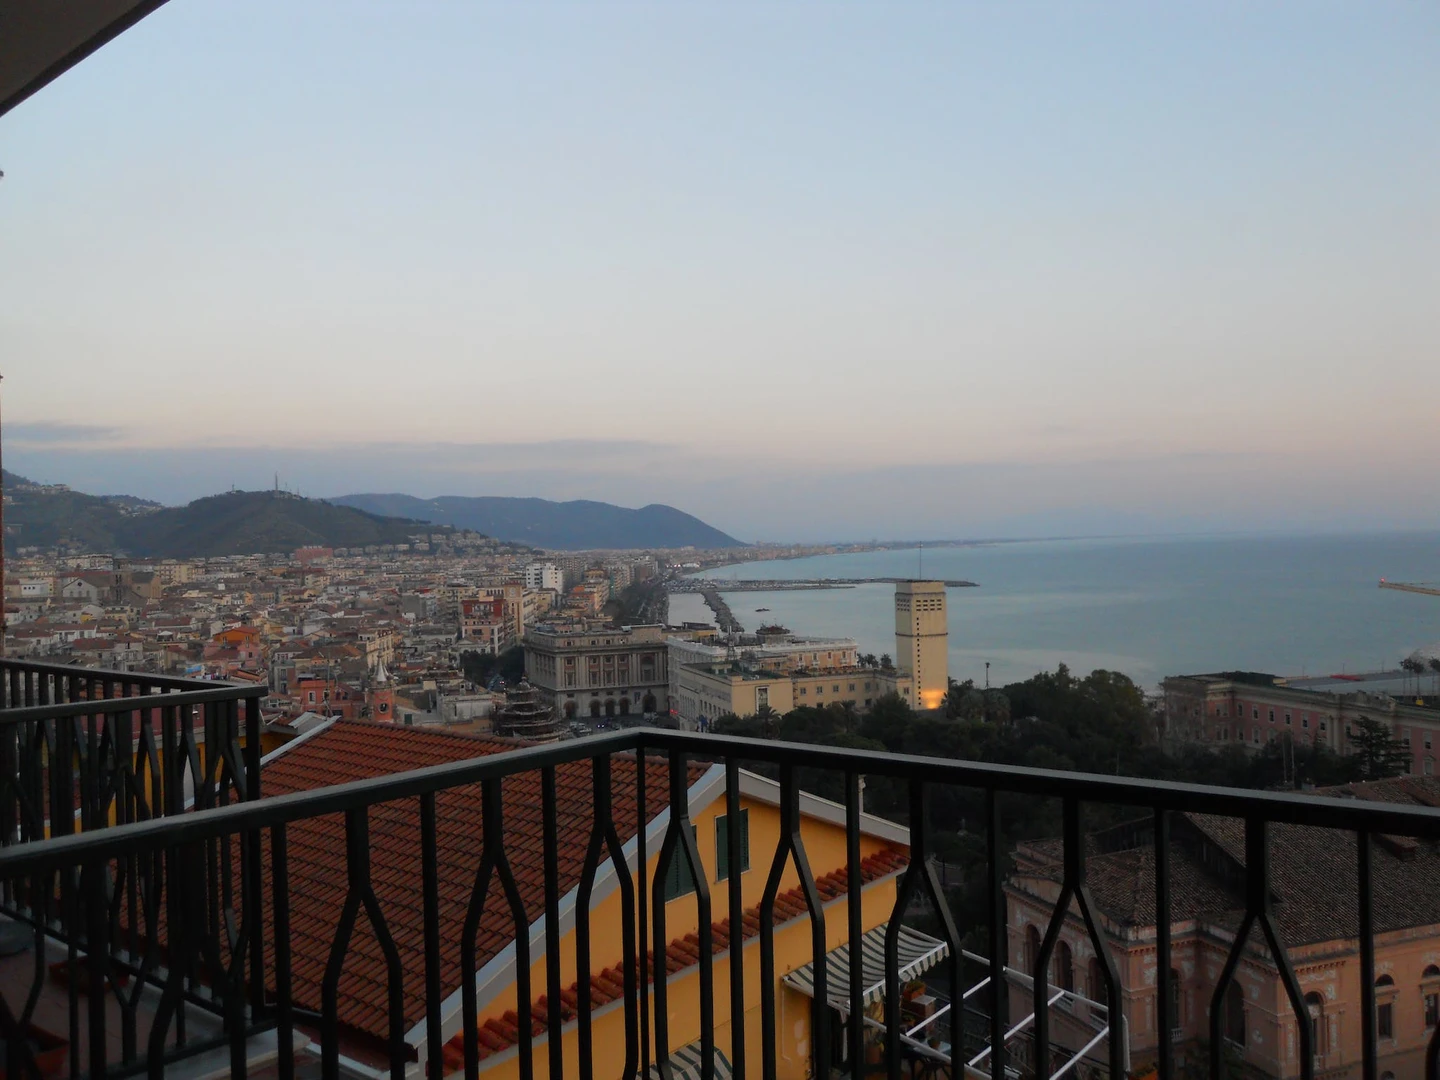 Apartamento moderno y luminoso en Salerno